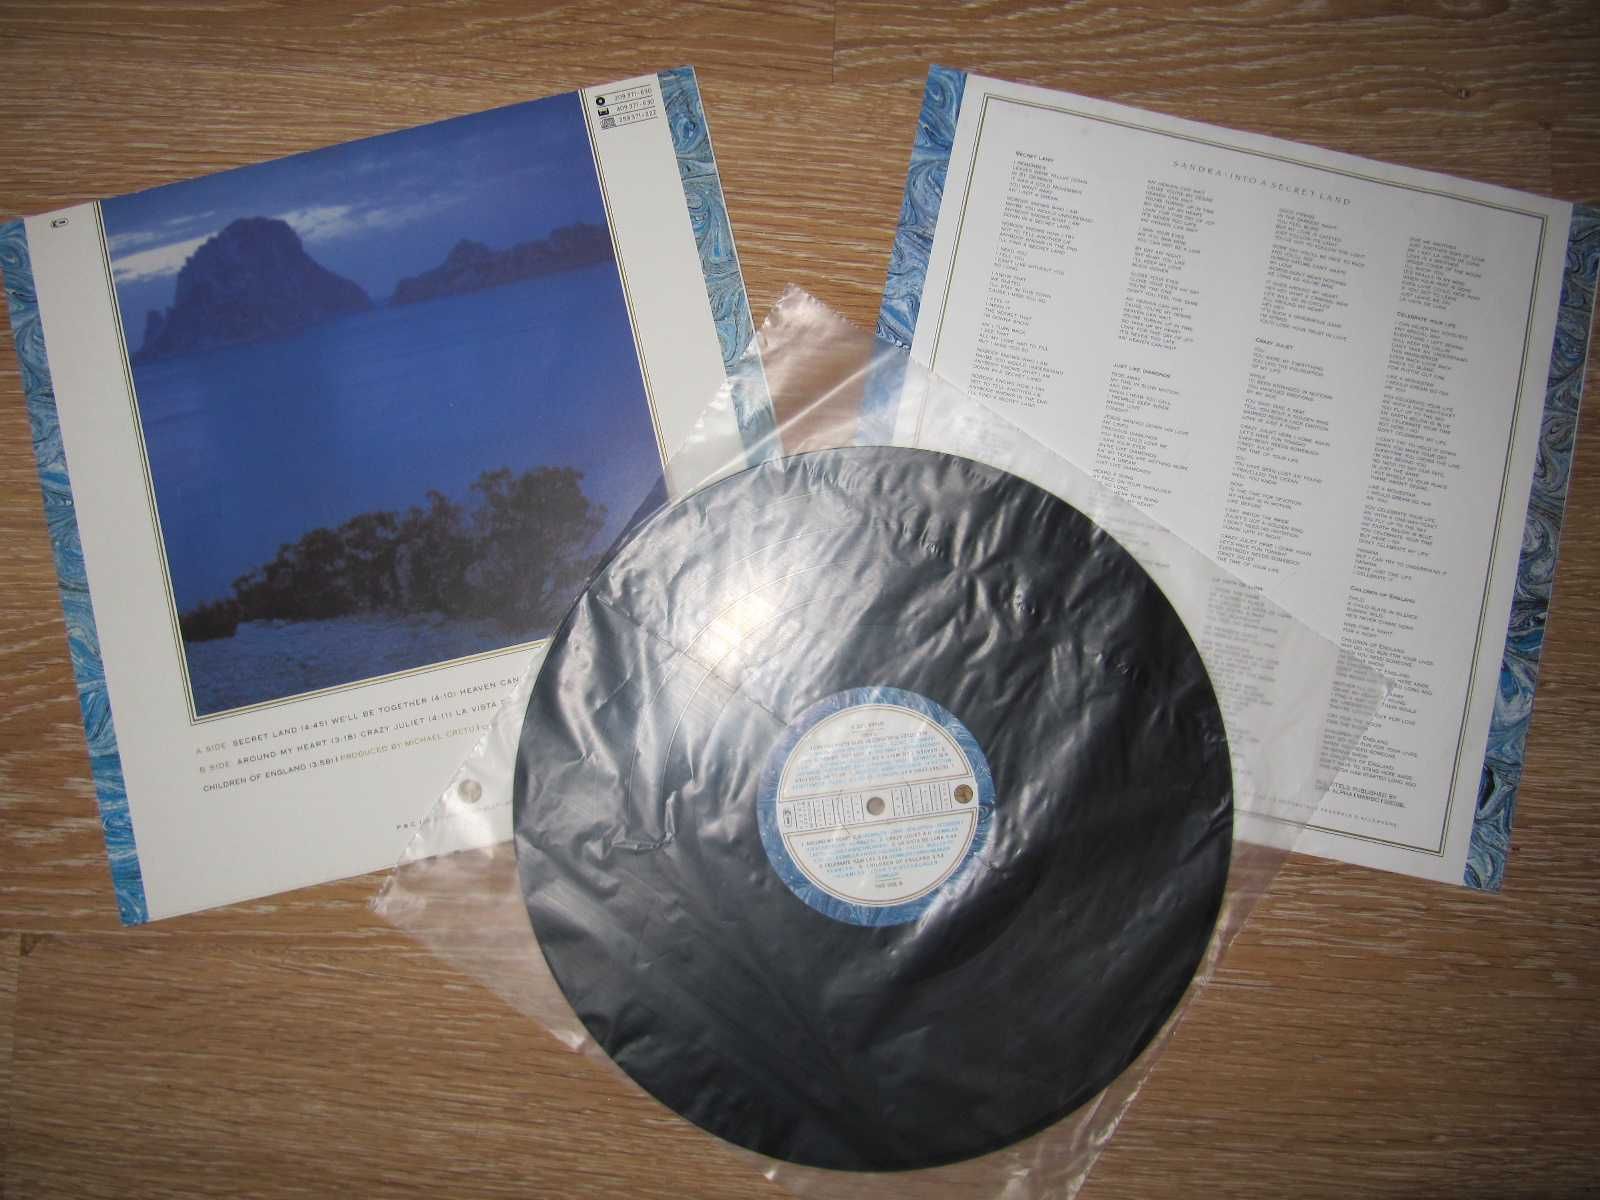 Виниловый Альбом SANDRA -Into A Secret Land- 1988 *Оригинал